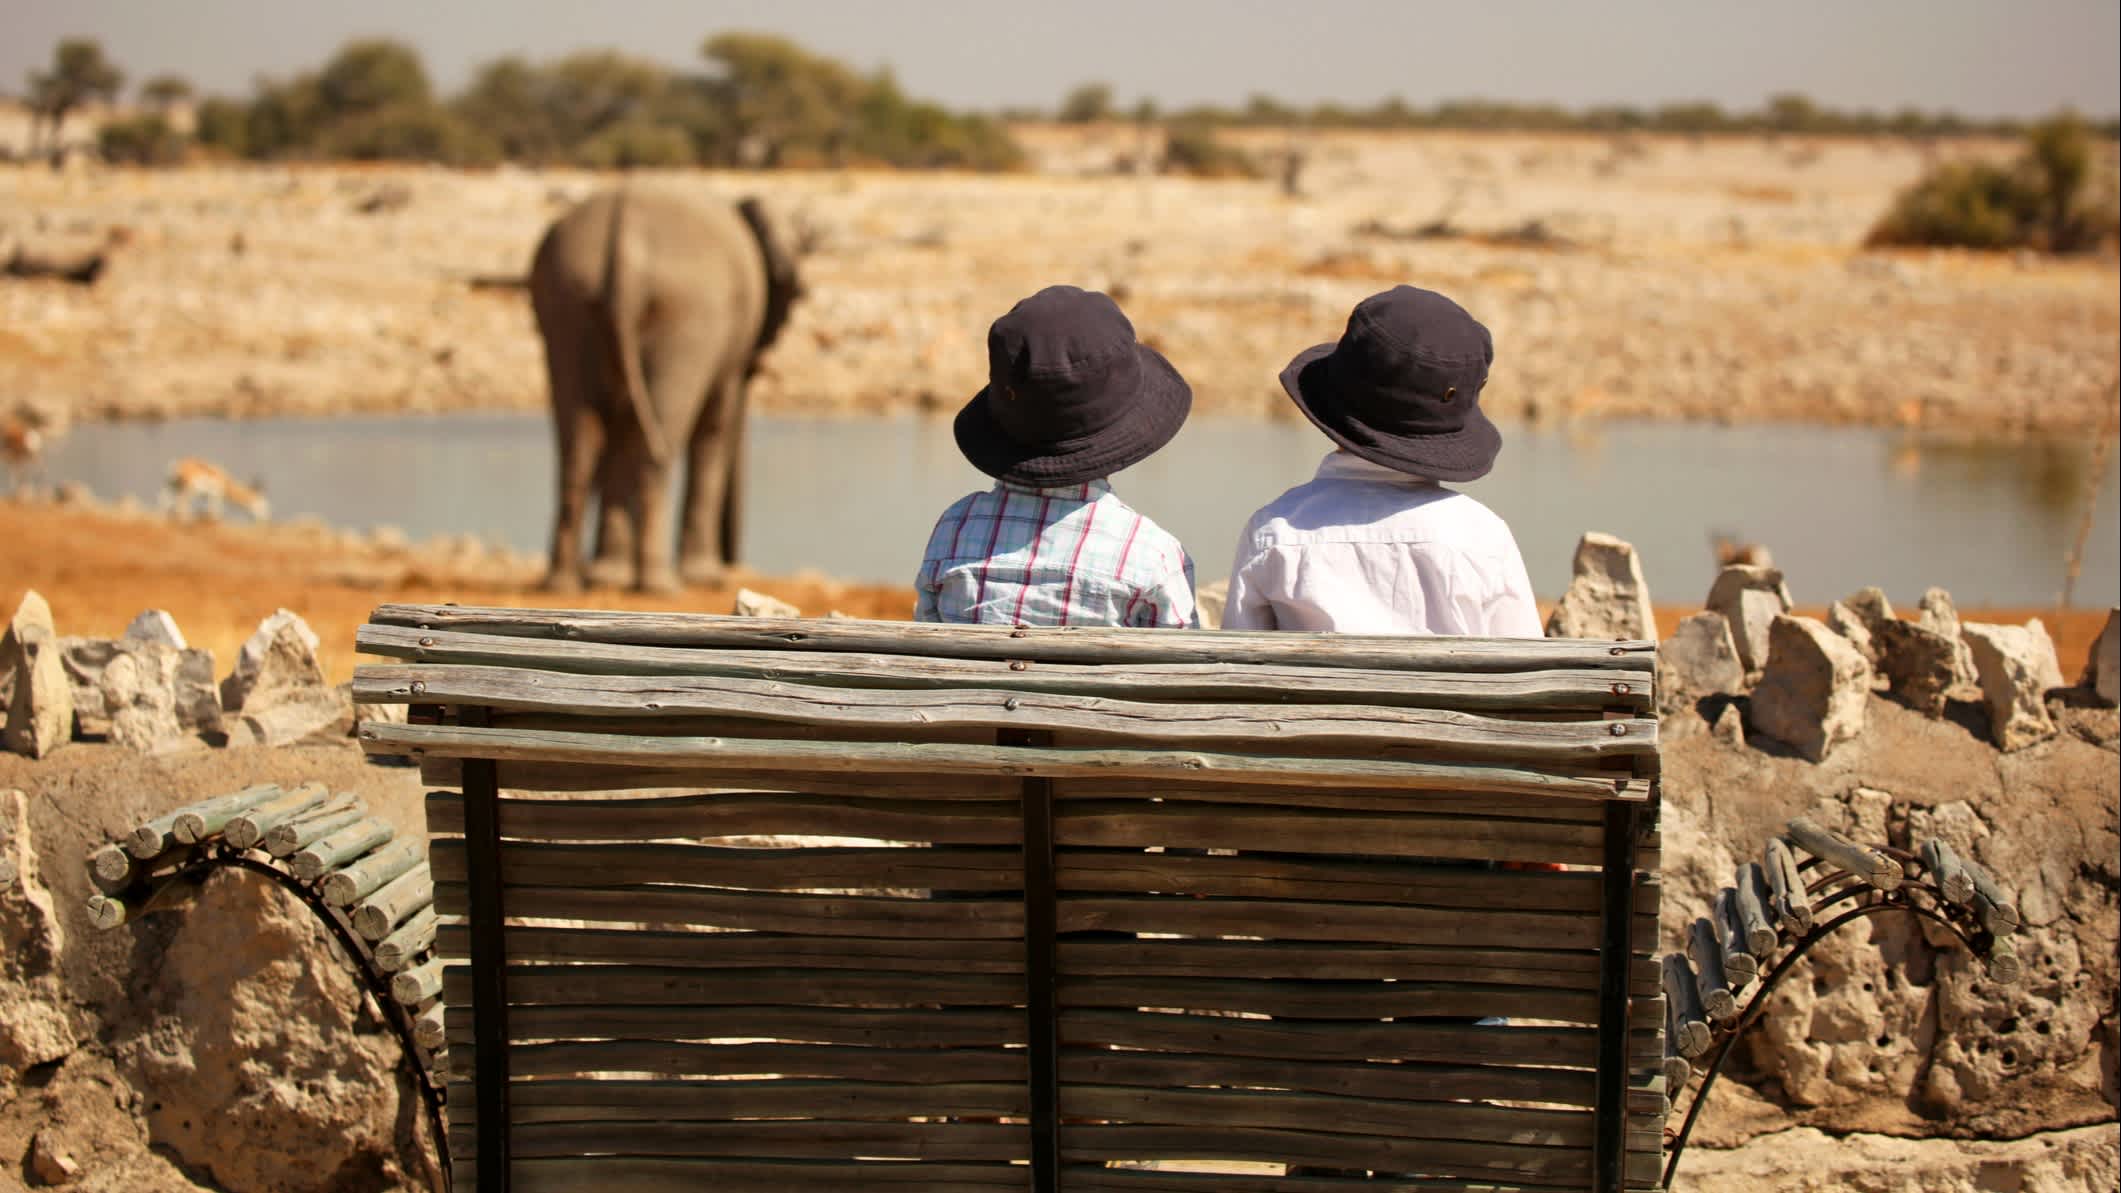 Des enfants observent des éléphants au point d'eau Okaukuejo à Etosha, Namibie.

